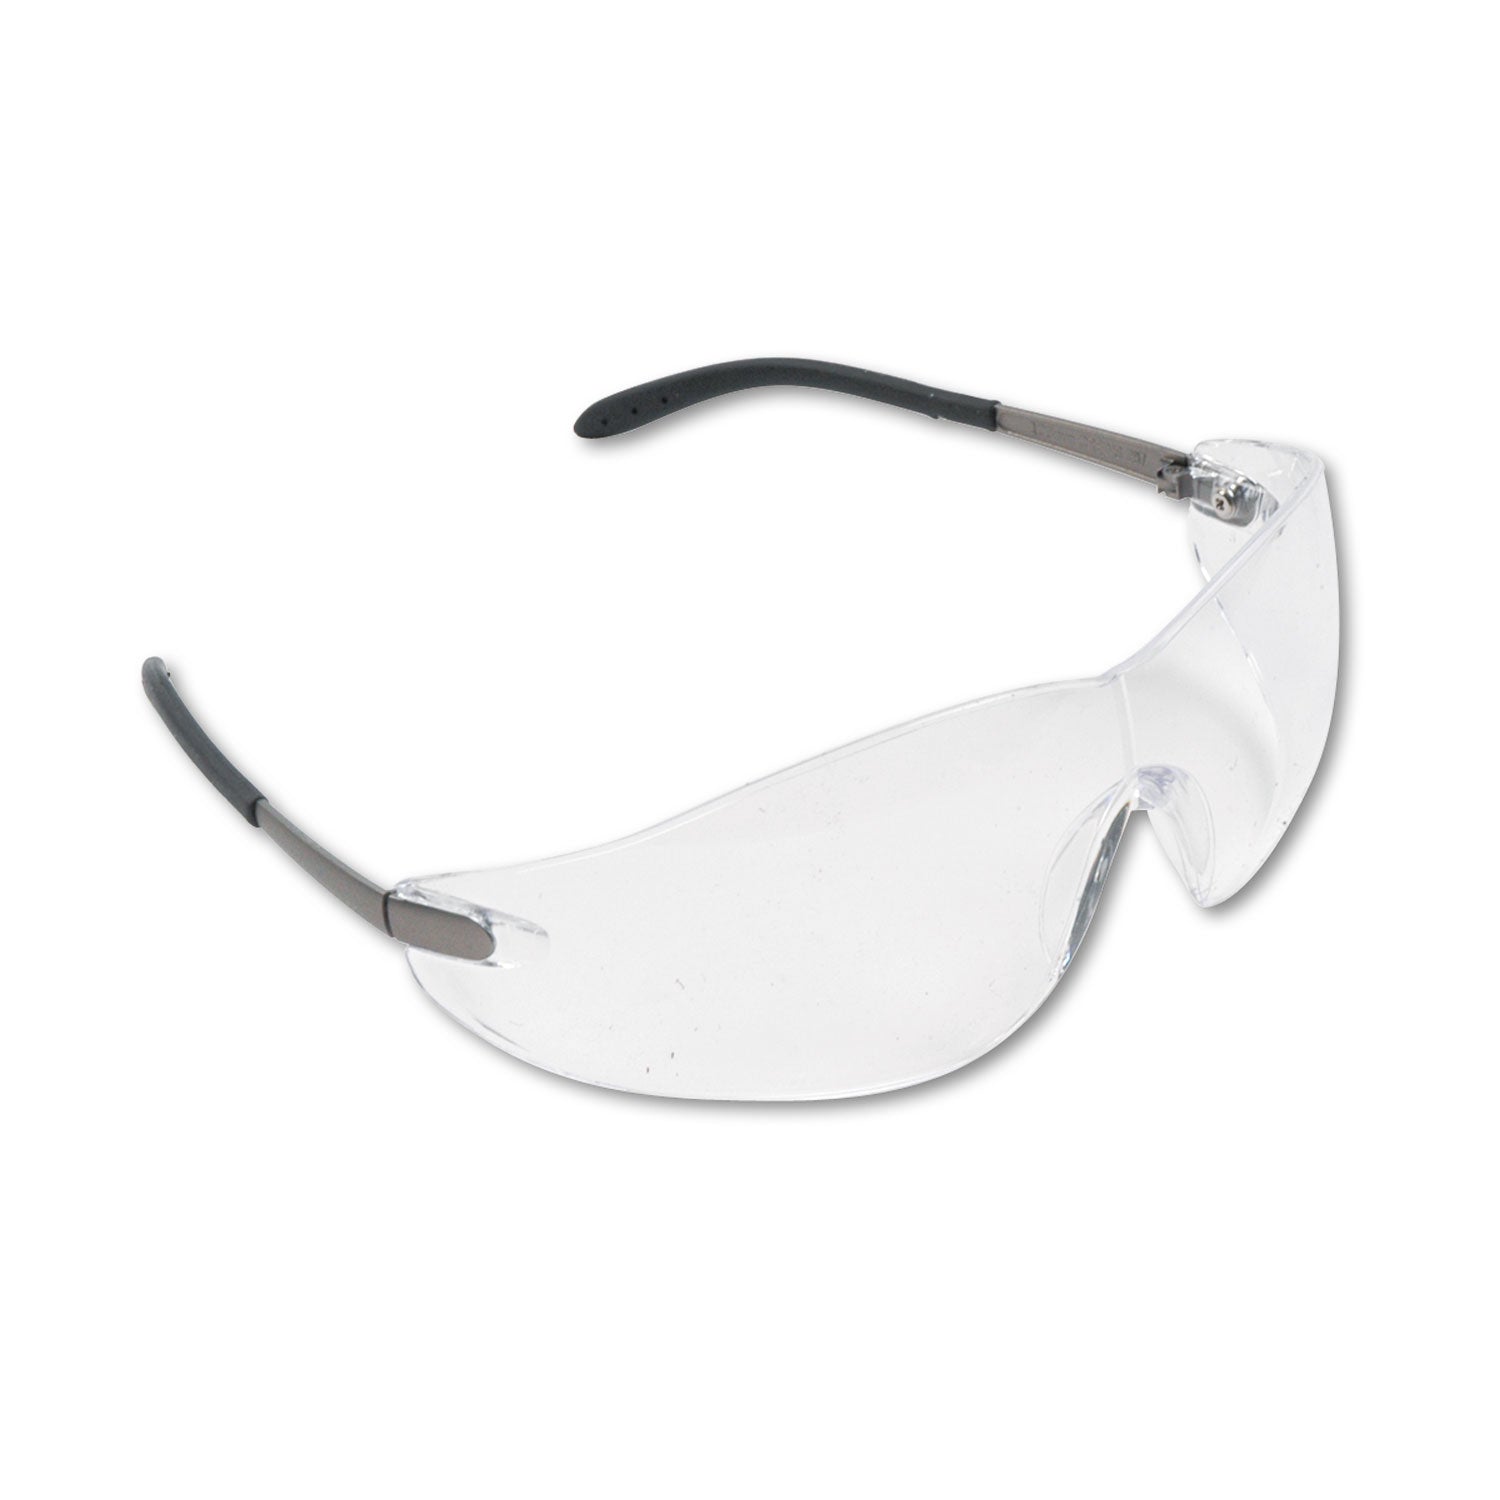 Blackjack Wraparound Safety Glasses, Chrome Plastic Frame, Clear Lens - 